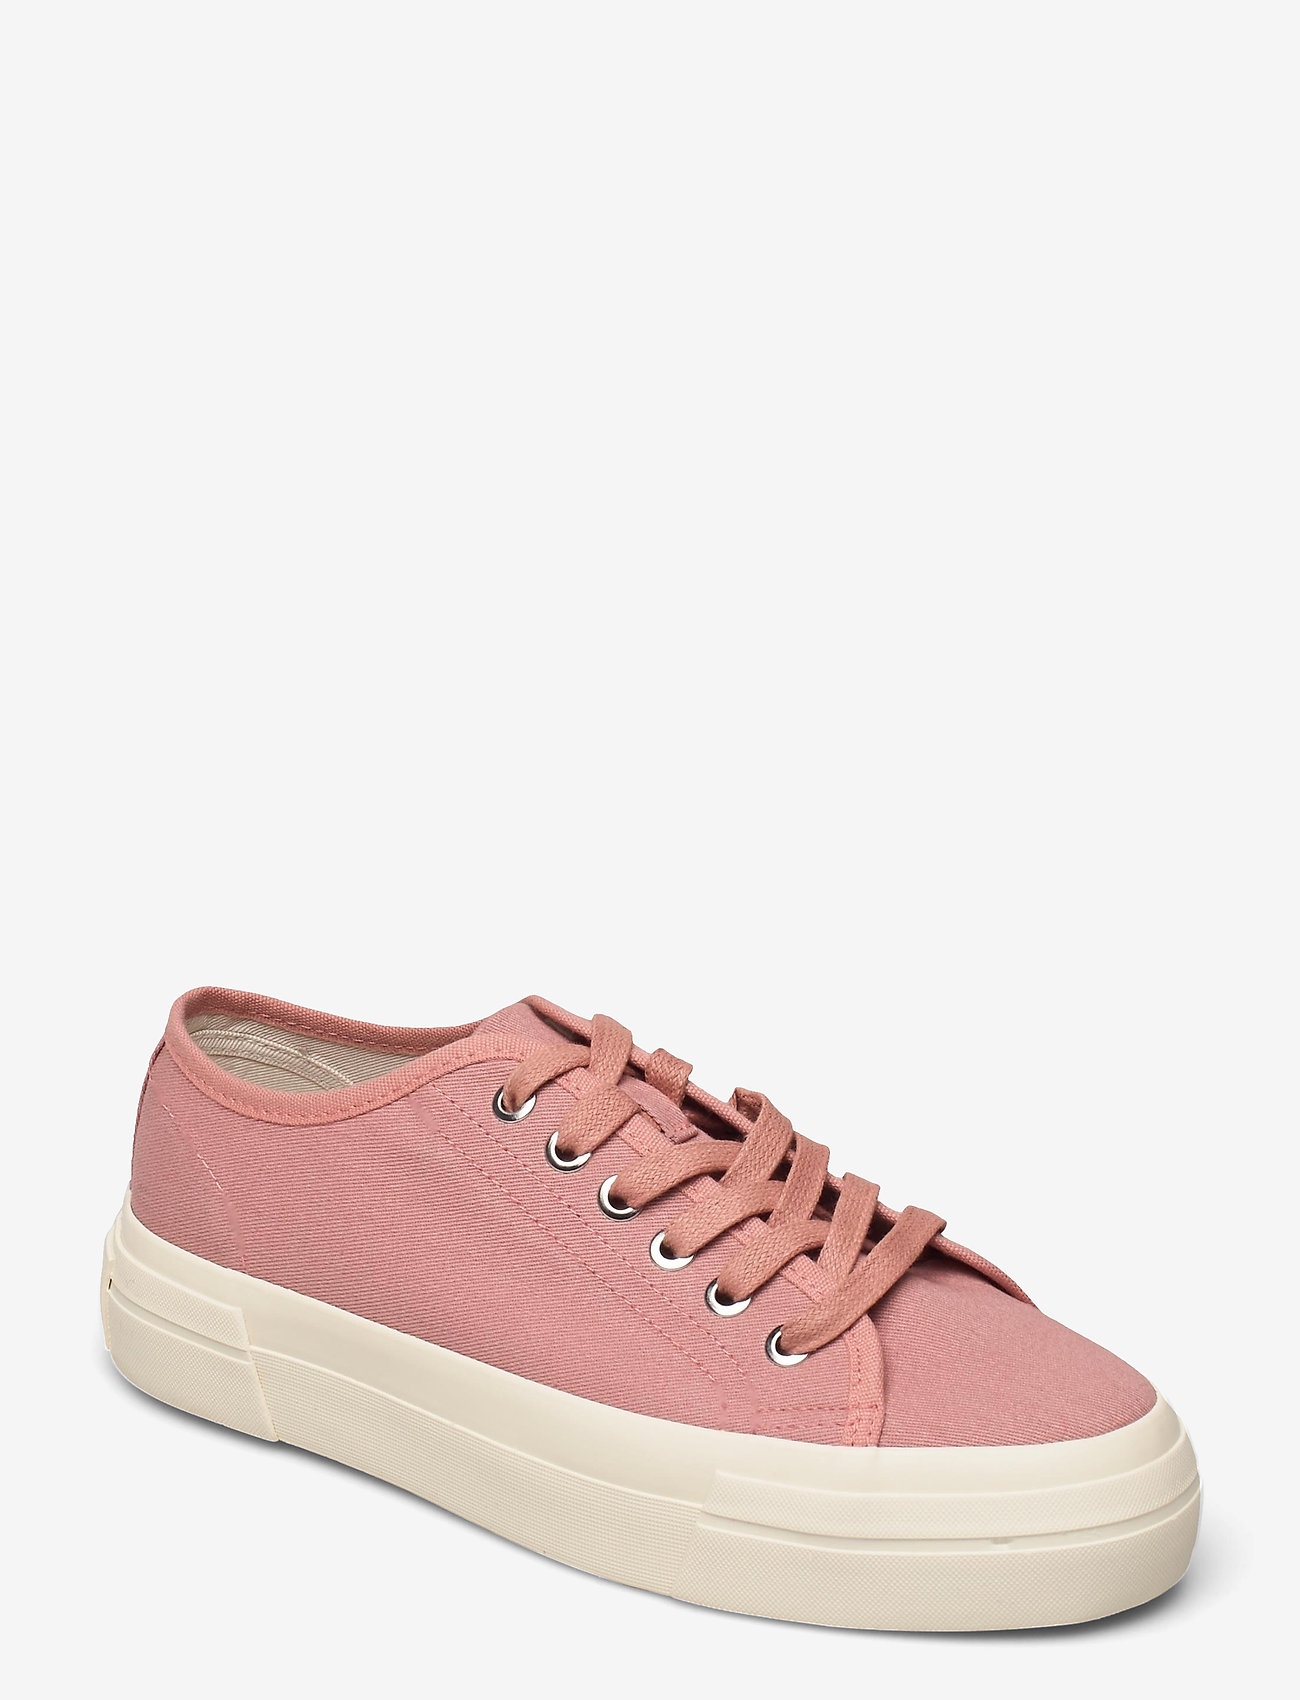 VAGABOND - TEDDIE W - lave sneakers - dusty pink - 0